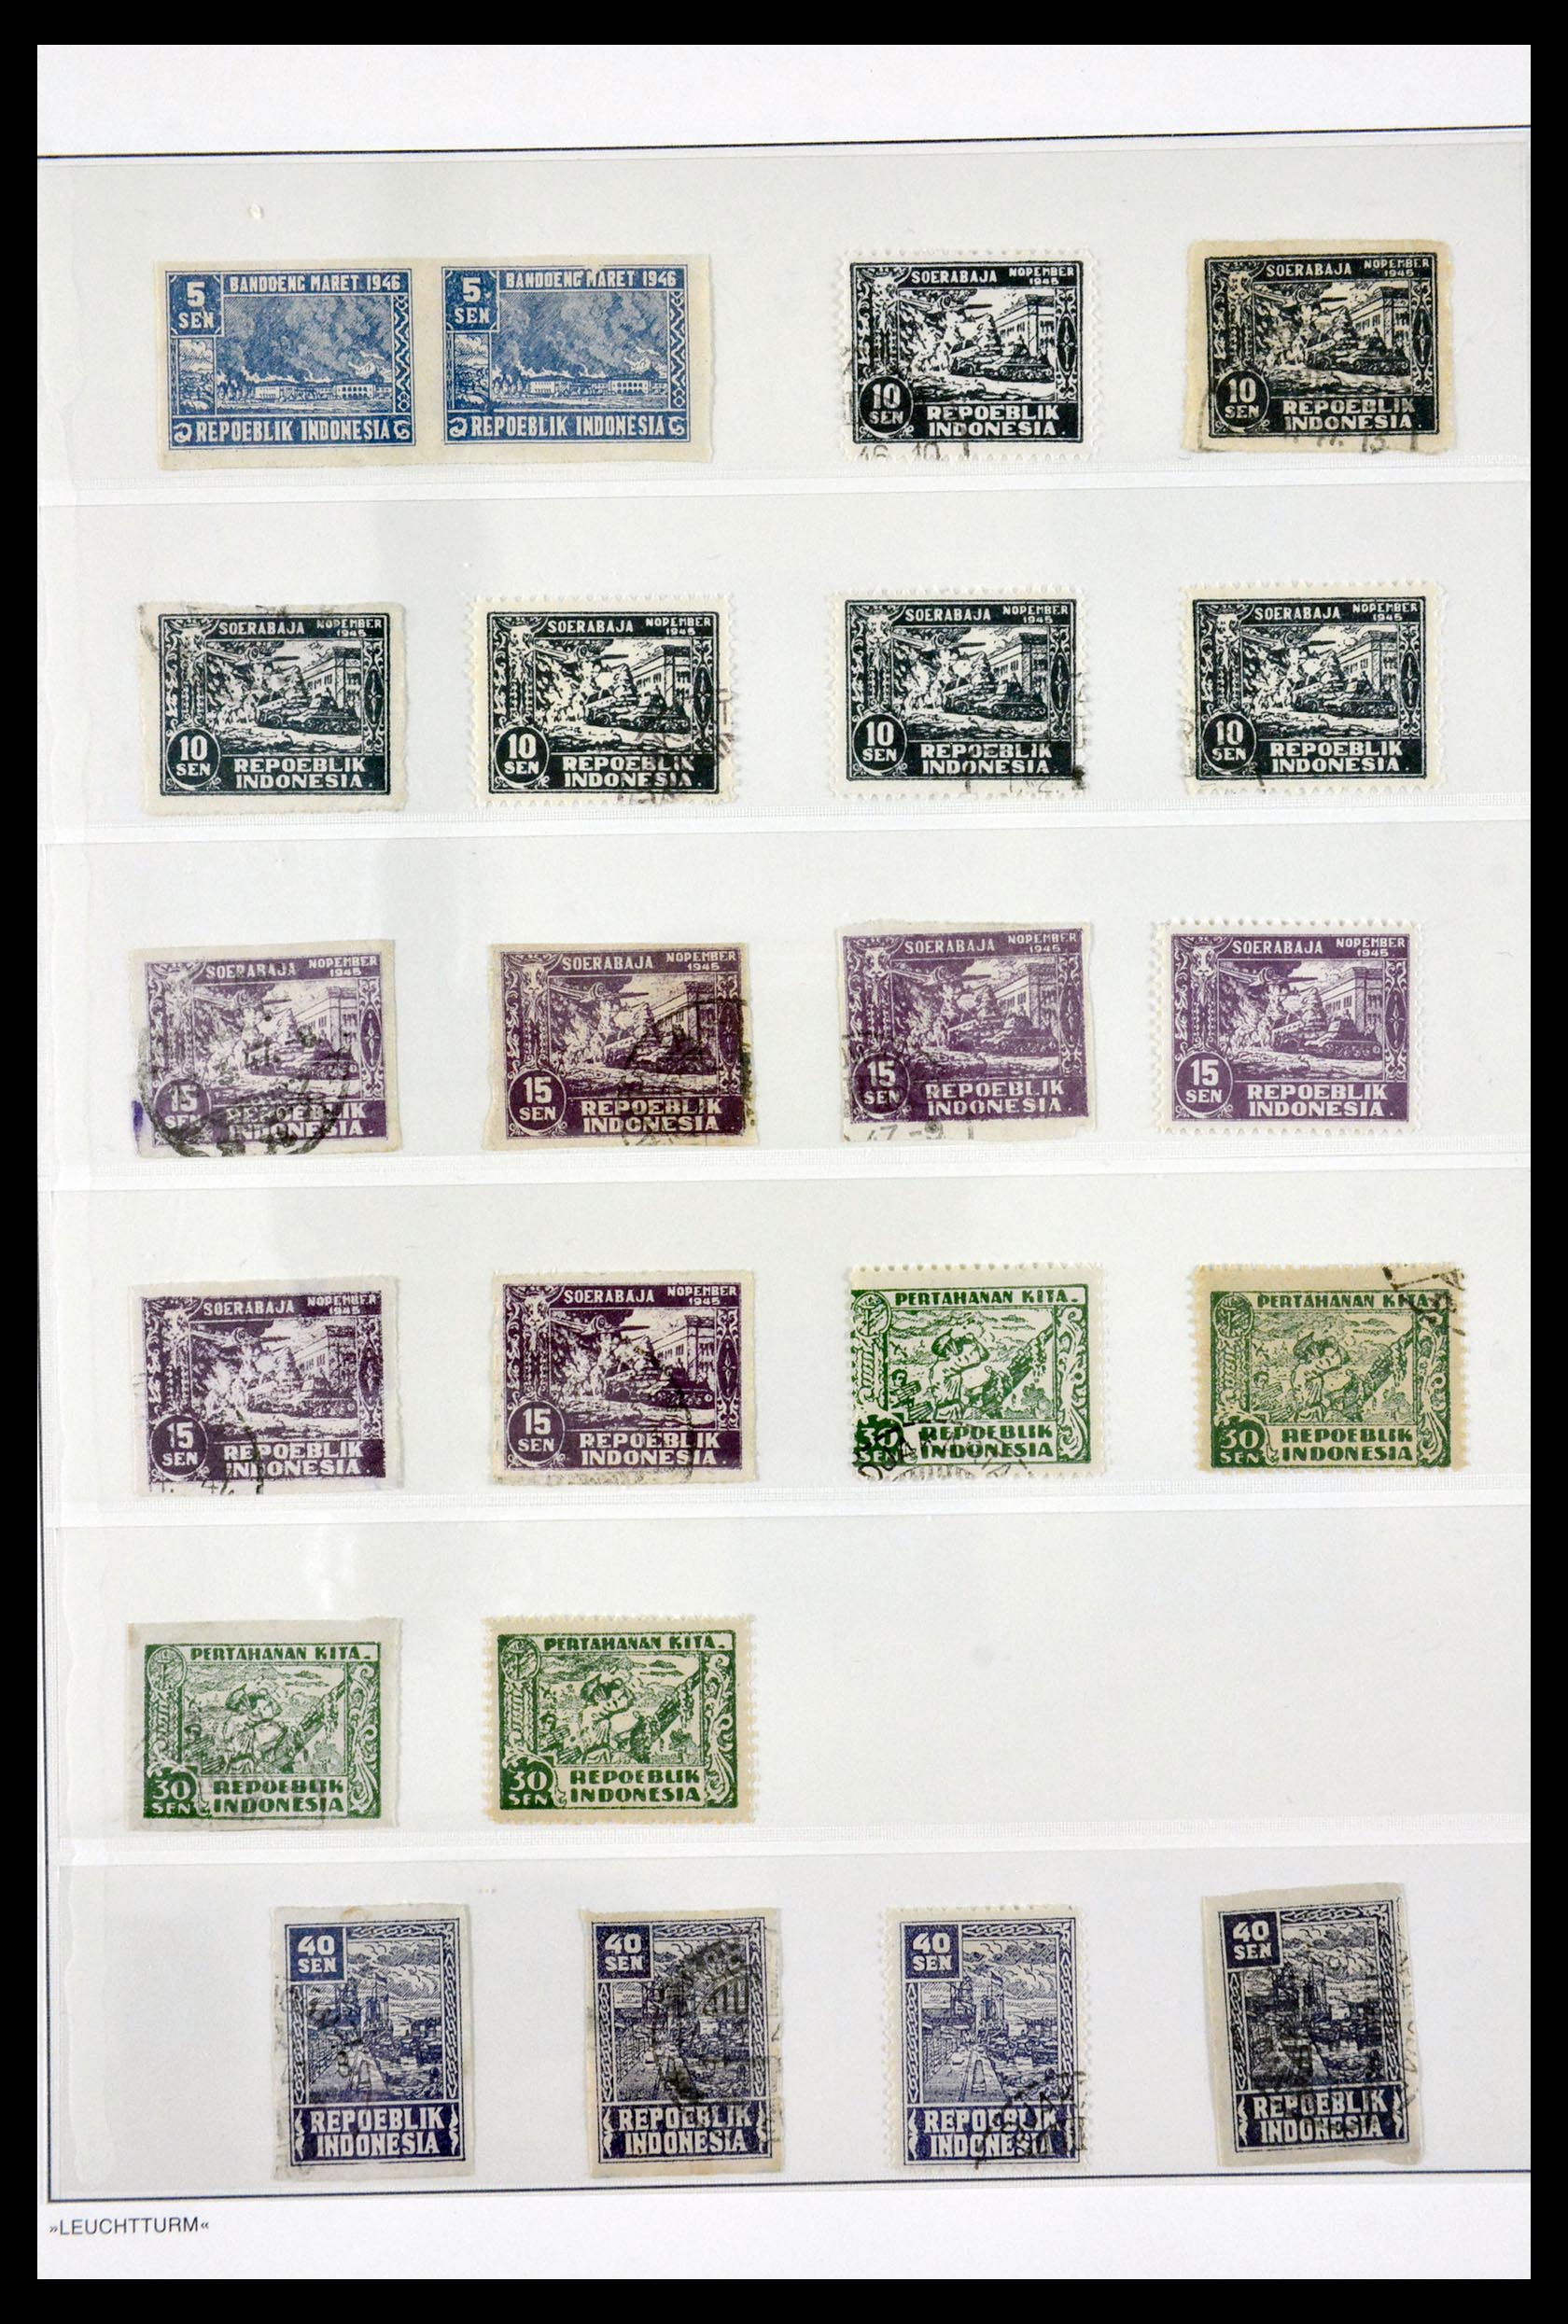 29786 080 - 29786 Interimperiod Indonesia 1945-1948.